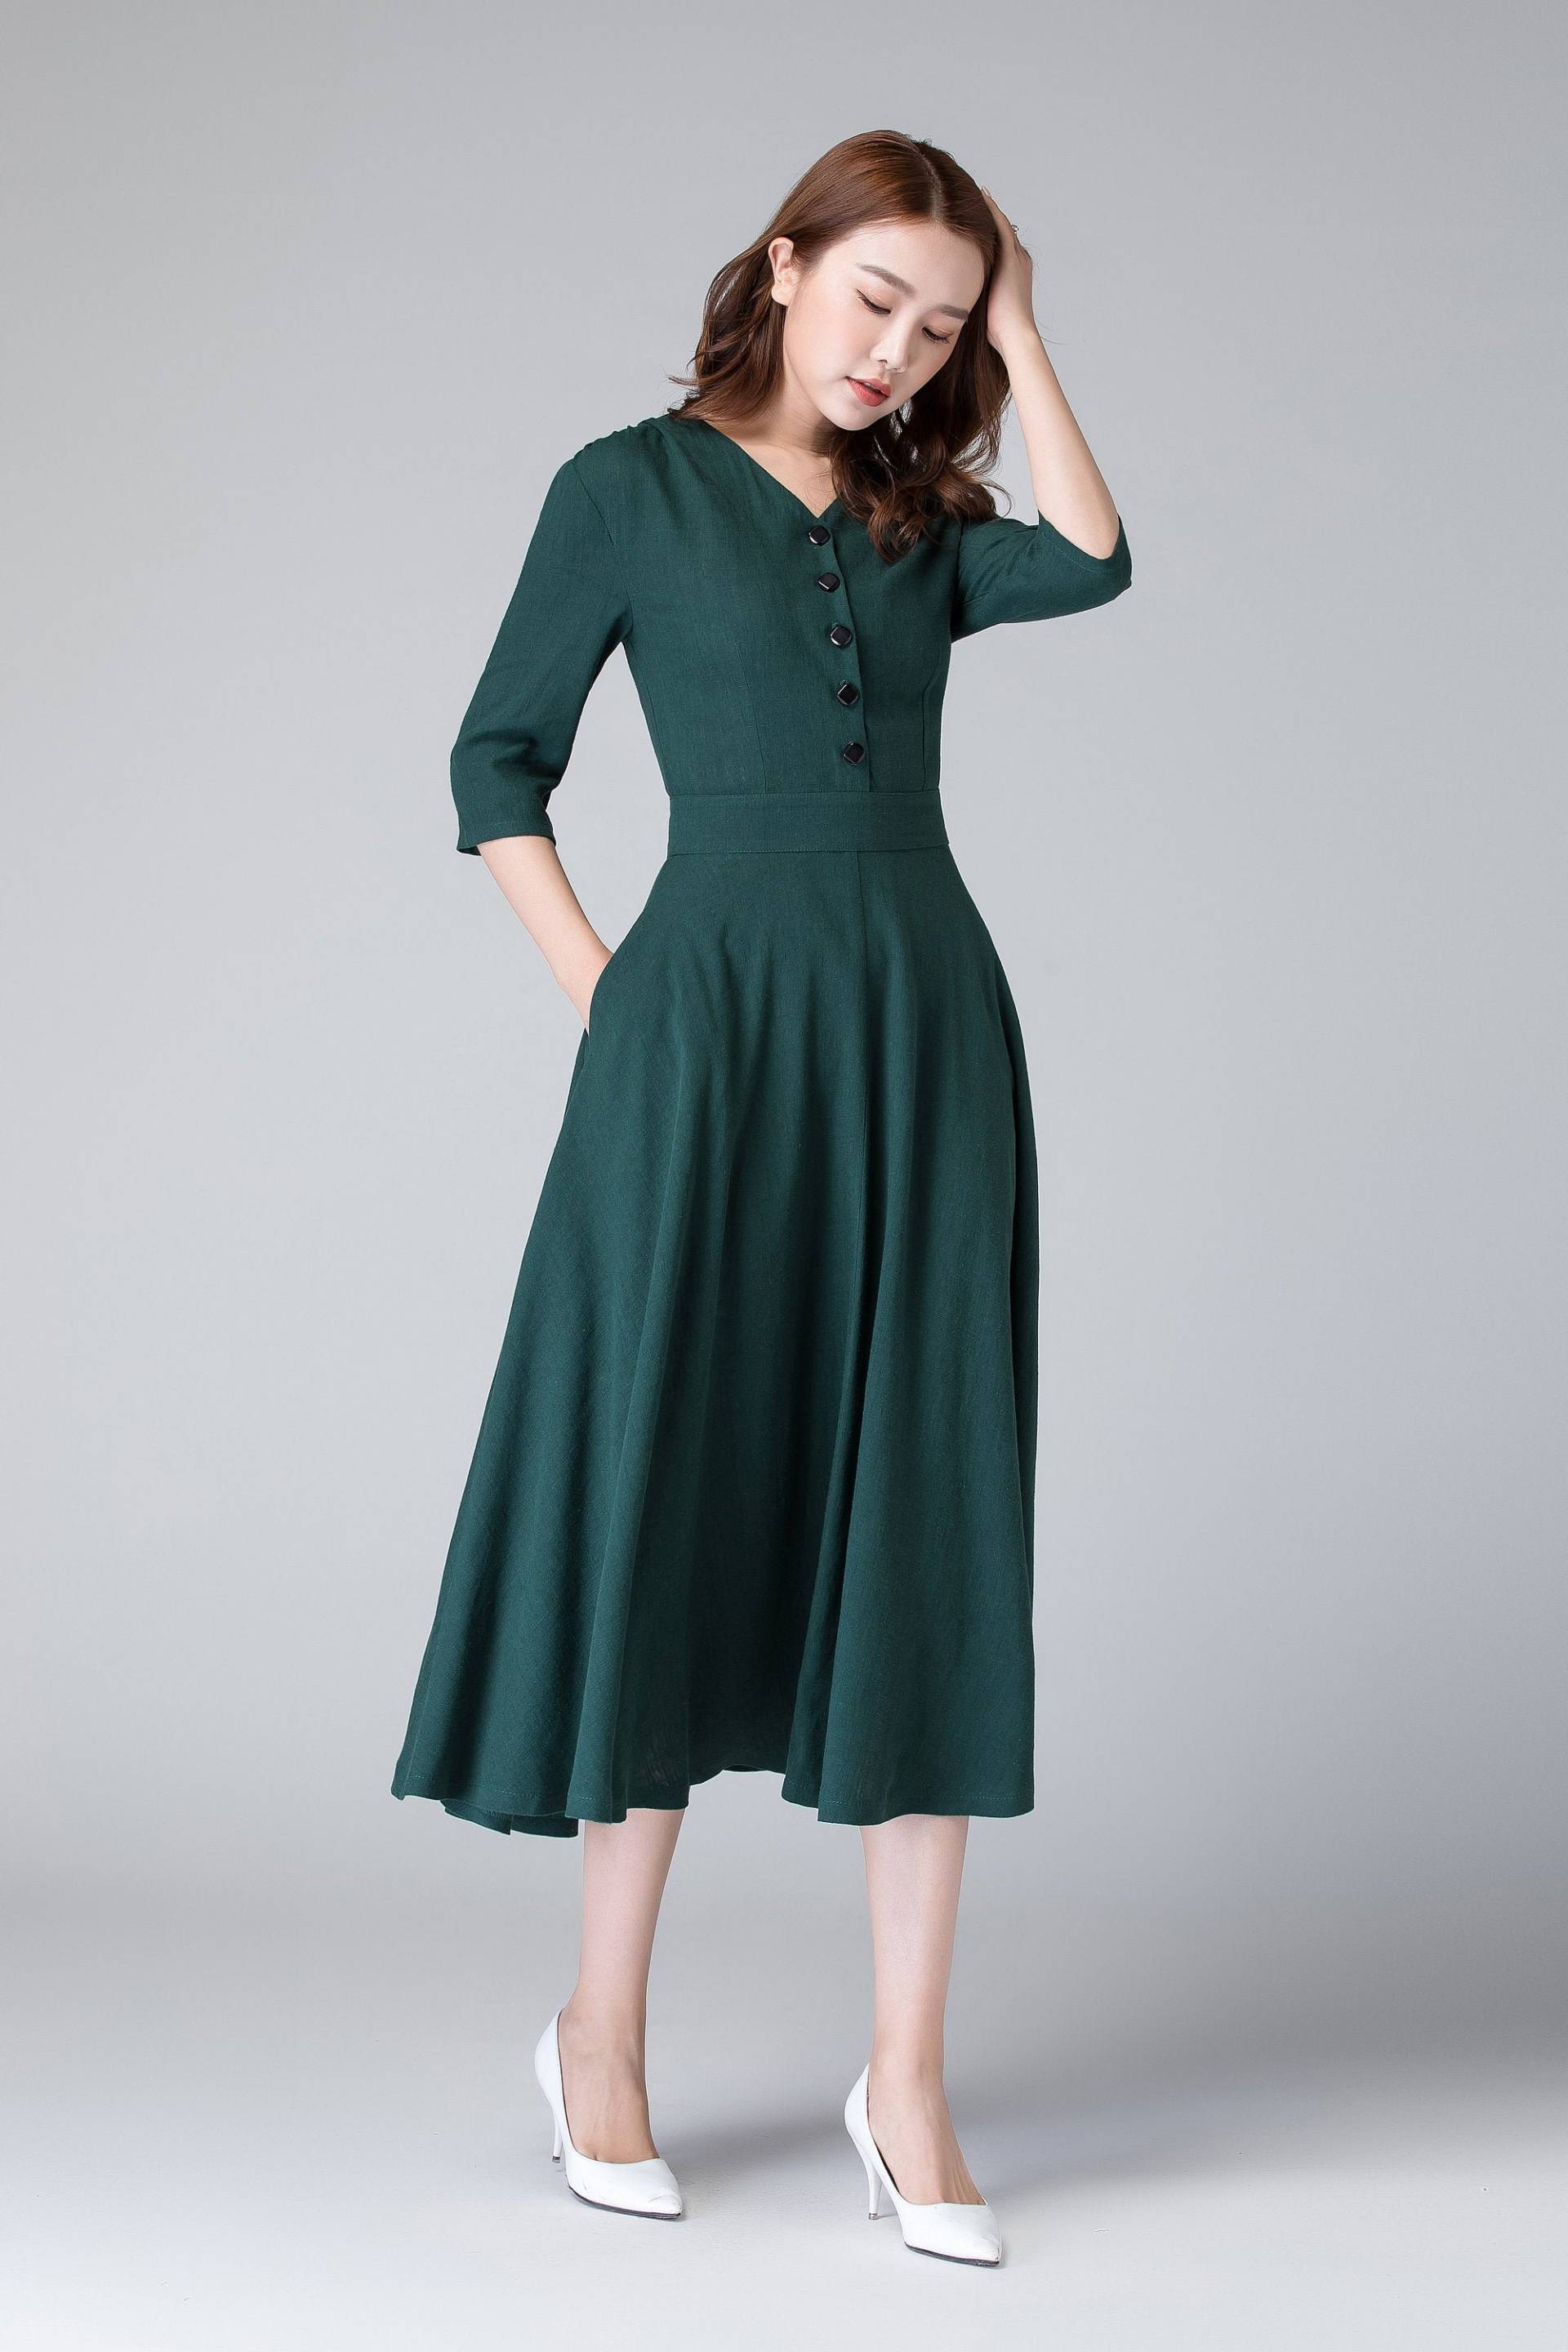 Shirtwaist-Kleid, Button-Up-Leinenkleid, Kurzärmeliges Leinen-Midikleid Mit Tasche, Grünes Kleid, Sommerleinenkleid, Damen-Leinenkleid 1906# von xiaolizi